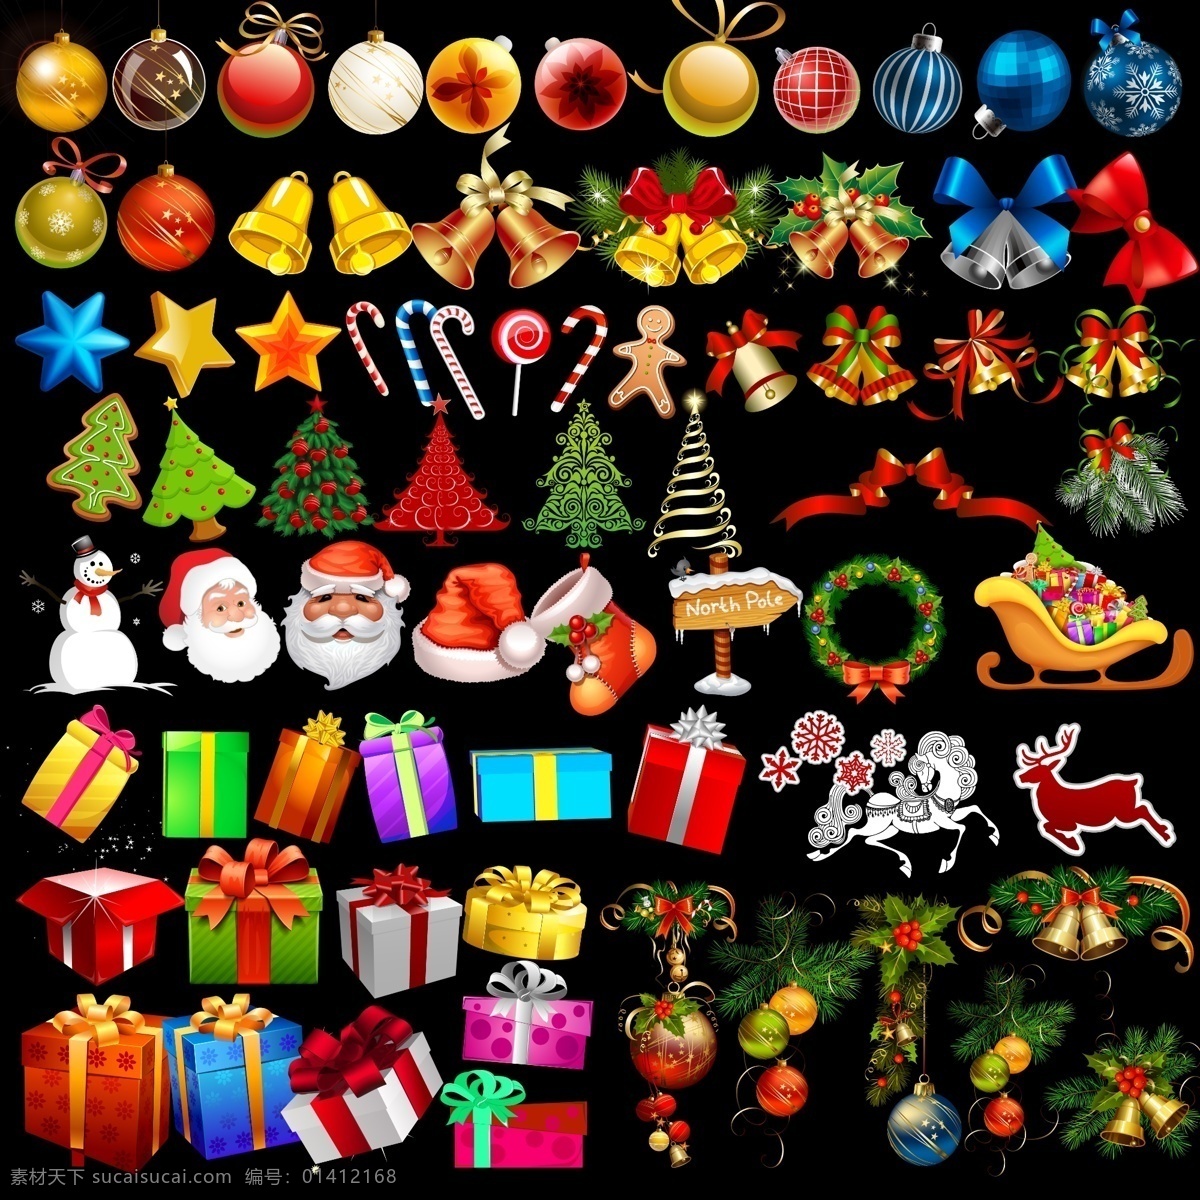 圣诞节 元素 分层 金色铃铛 圣诞节素材 圣诞老人 圣诞树 彩色圣诞球 psd源文件